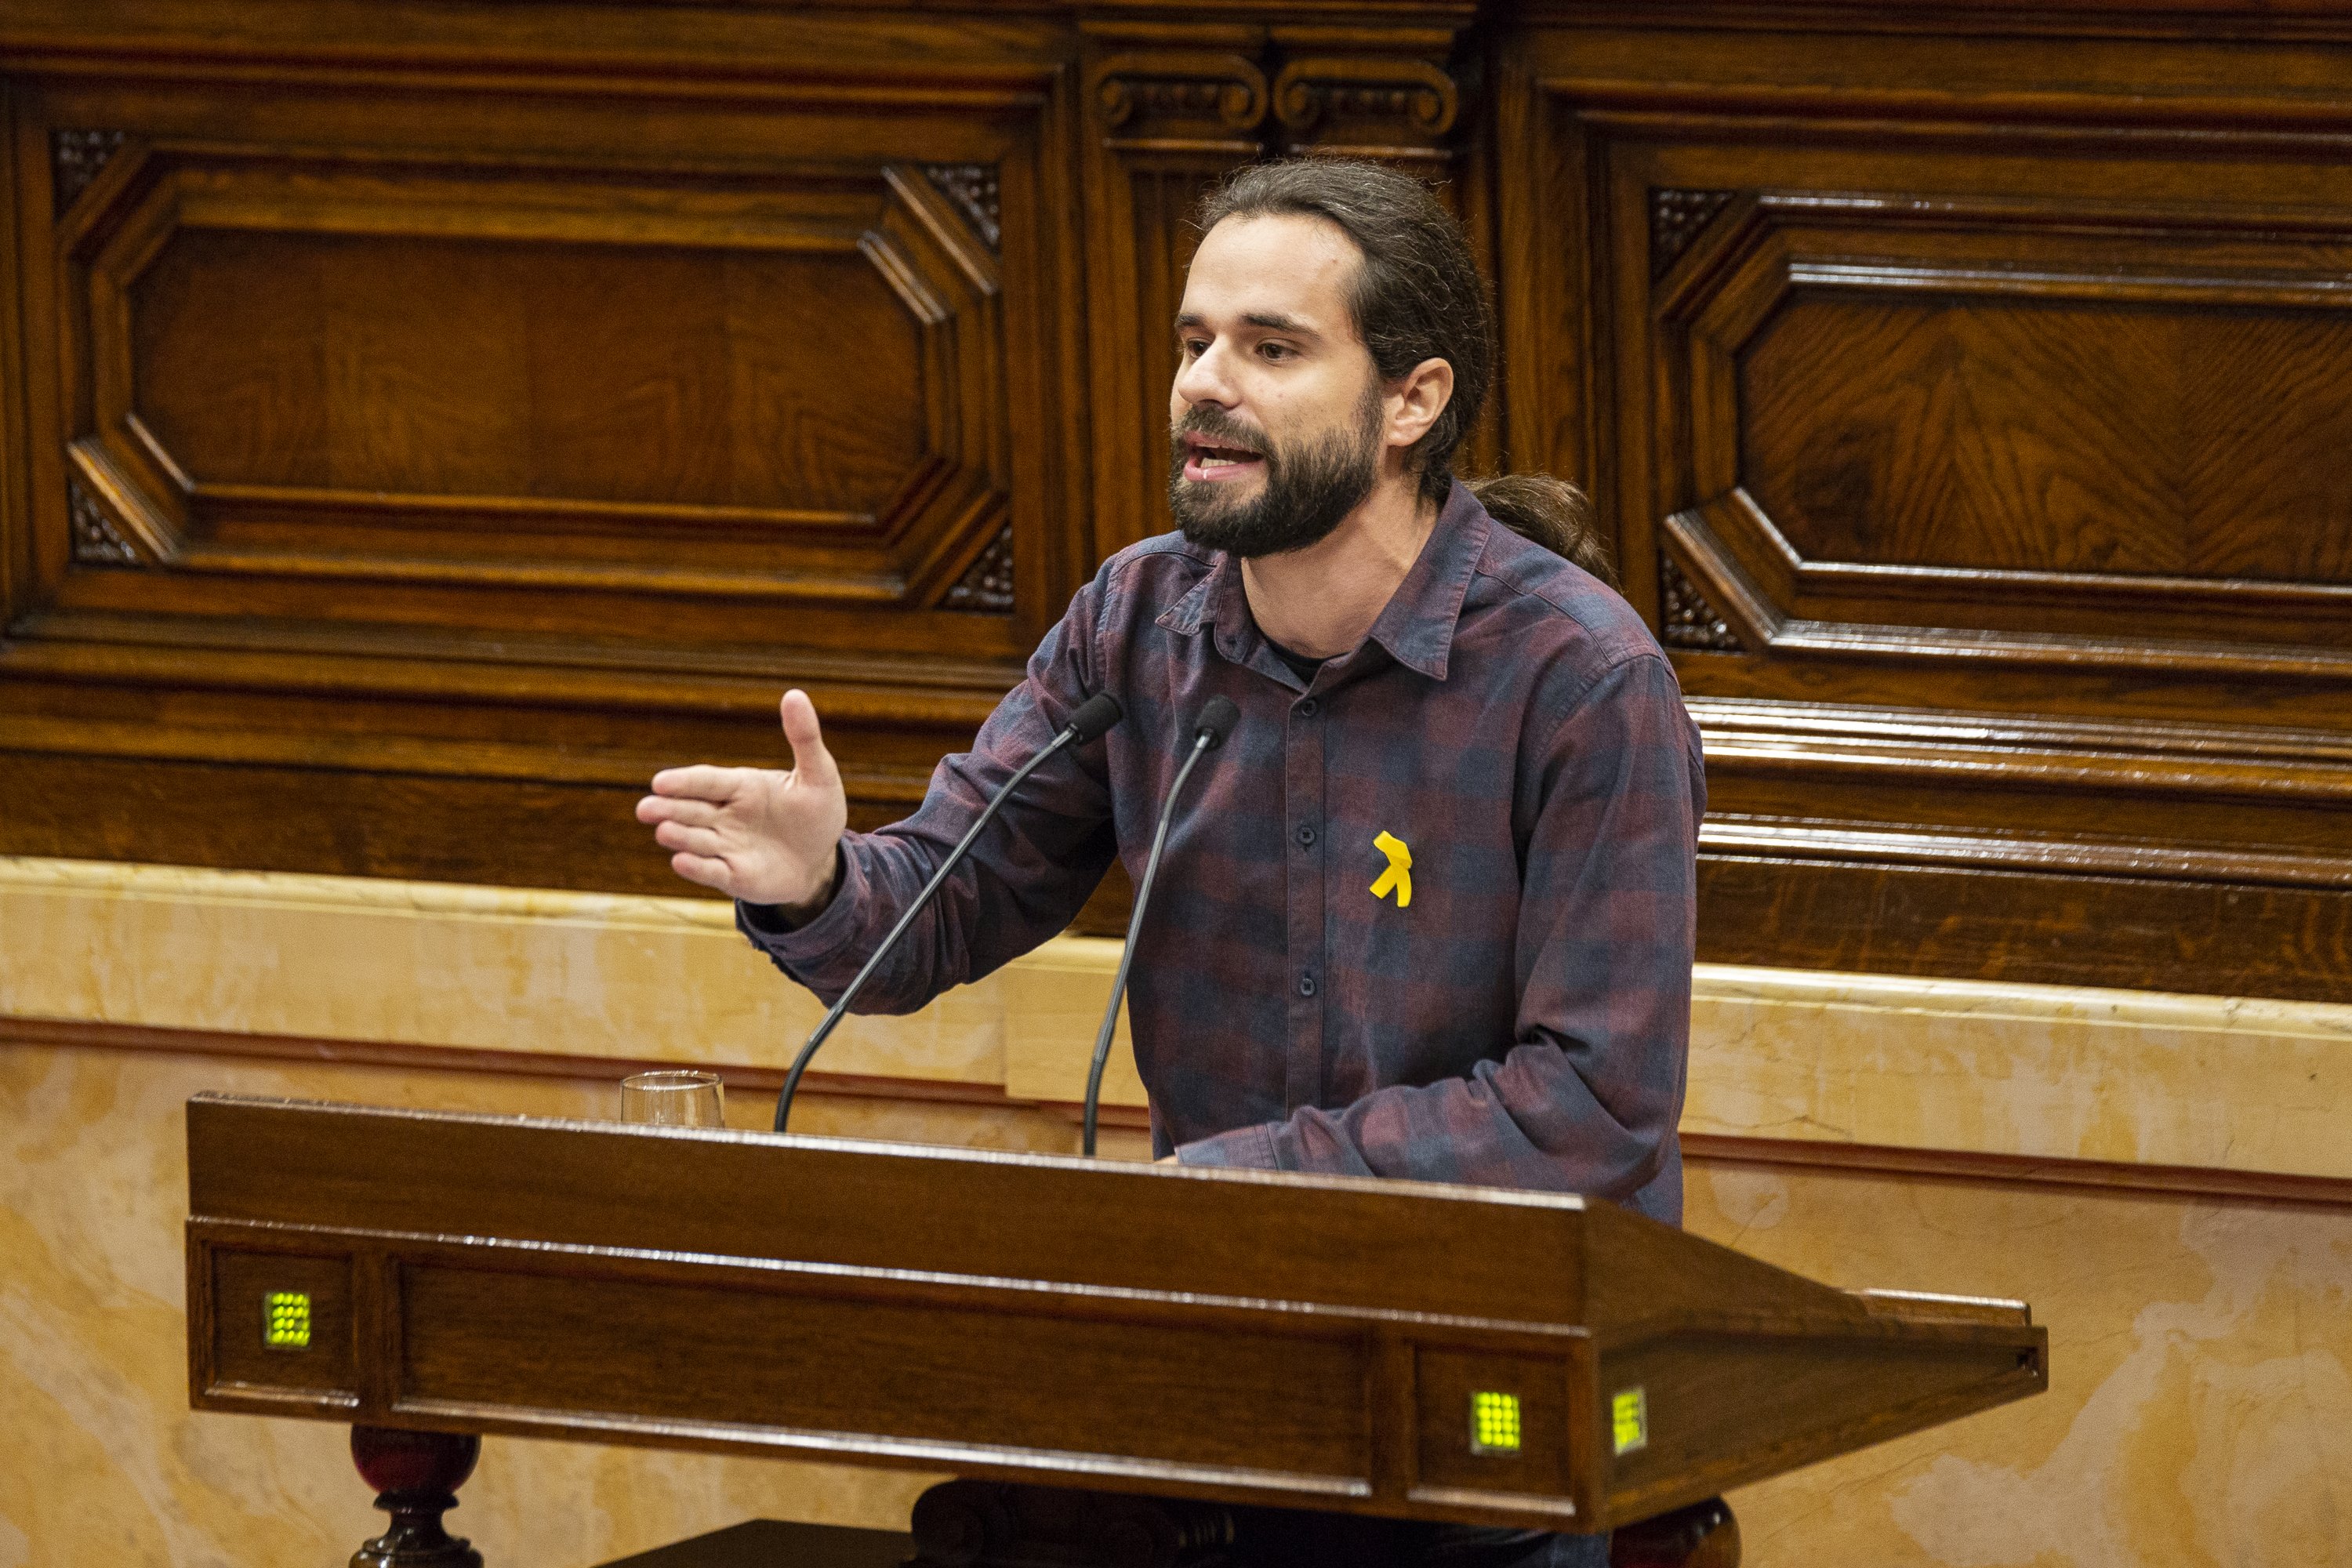 El presidente de ERC en Barcelona critica el estado de alarma: "Qué pena!"